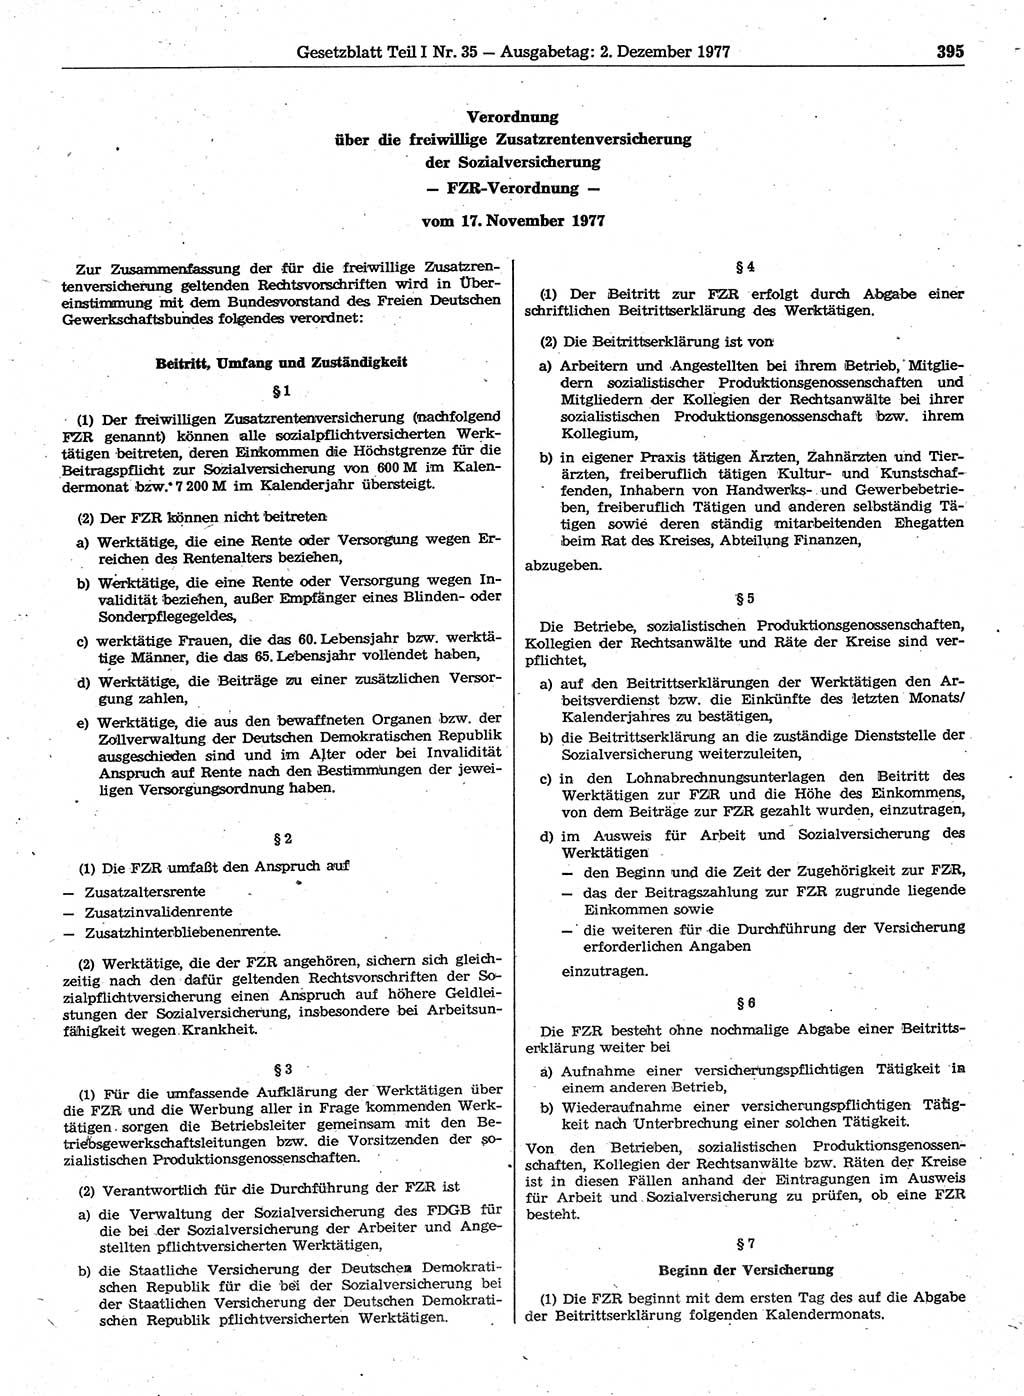 Gesetzblatt (GBl.) der Deutschen Demokratischen Republik (DDR) Teil Ⅰ 1977, Seite 395 (GBl. DDR Ⅰ 1977, S. 395)